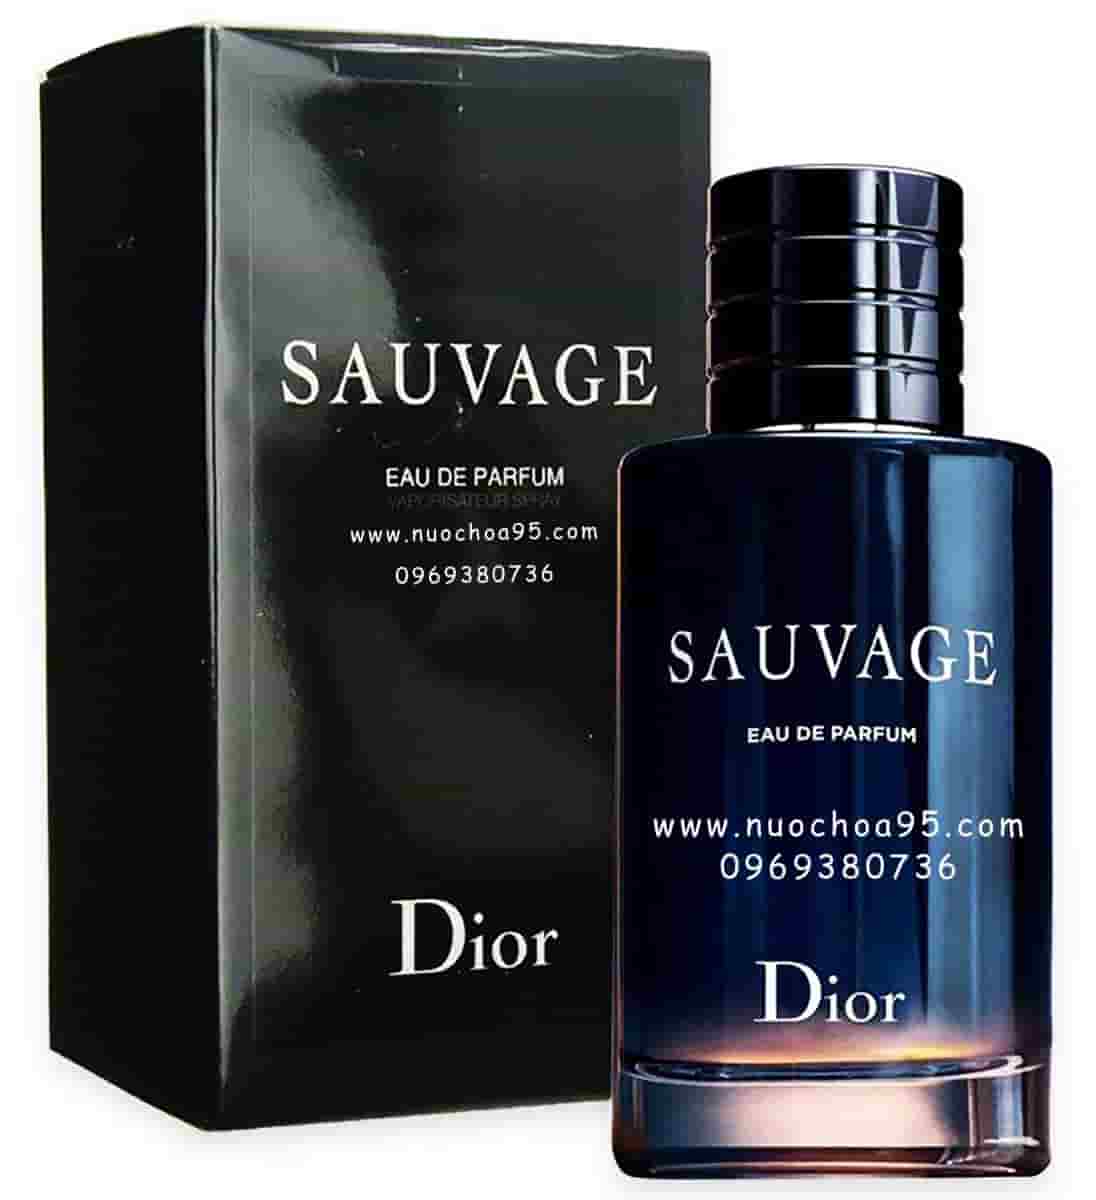 Nước hoa Sauvage Dior Eau de Parfum 